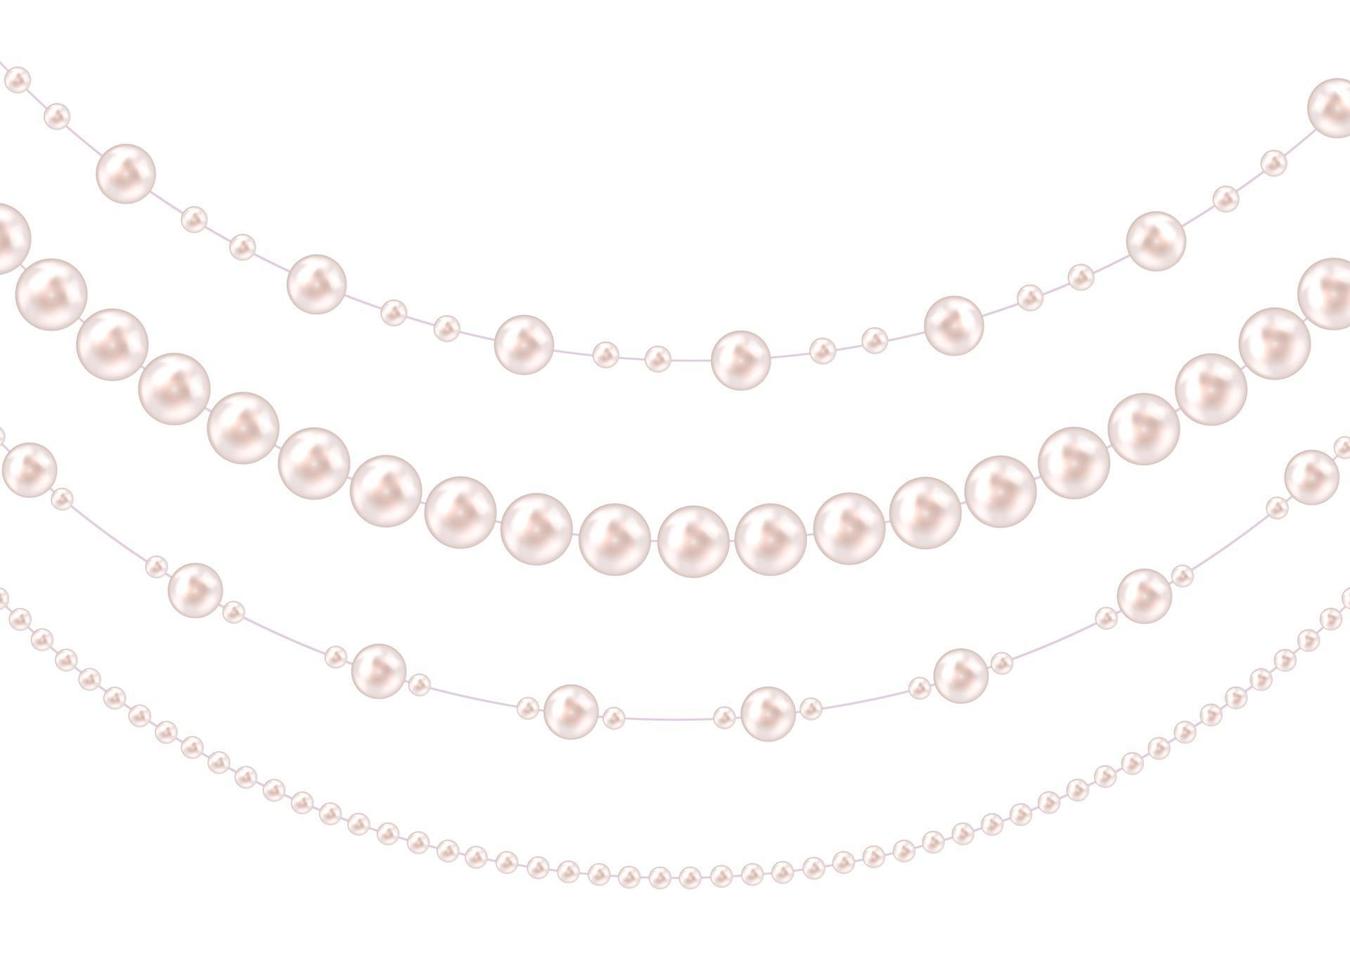 guirlandas de cordas com bolas, isoladas no fundo branco. ilustração vetorial vetor